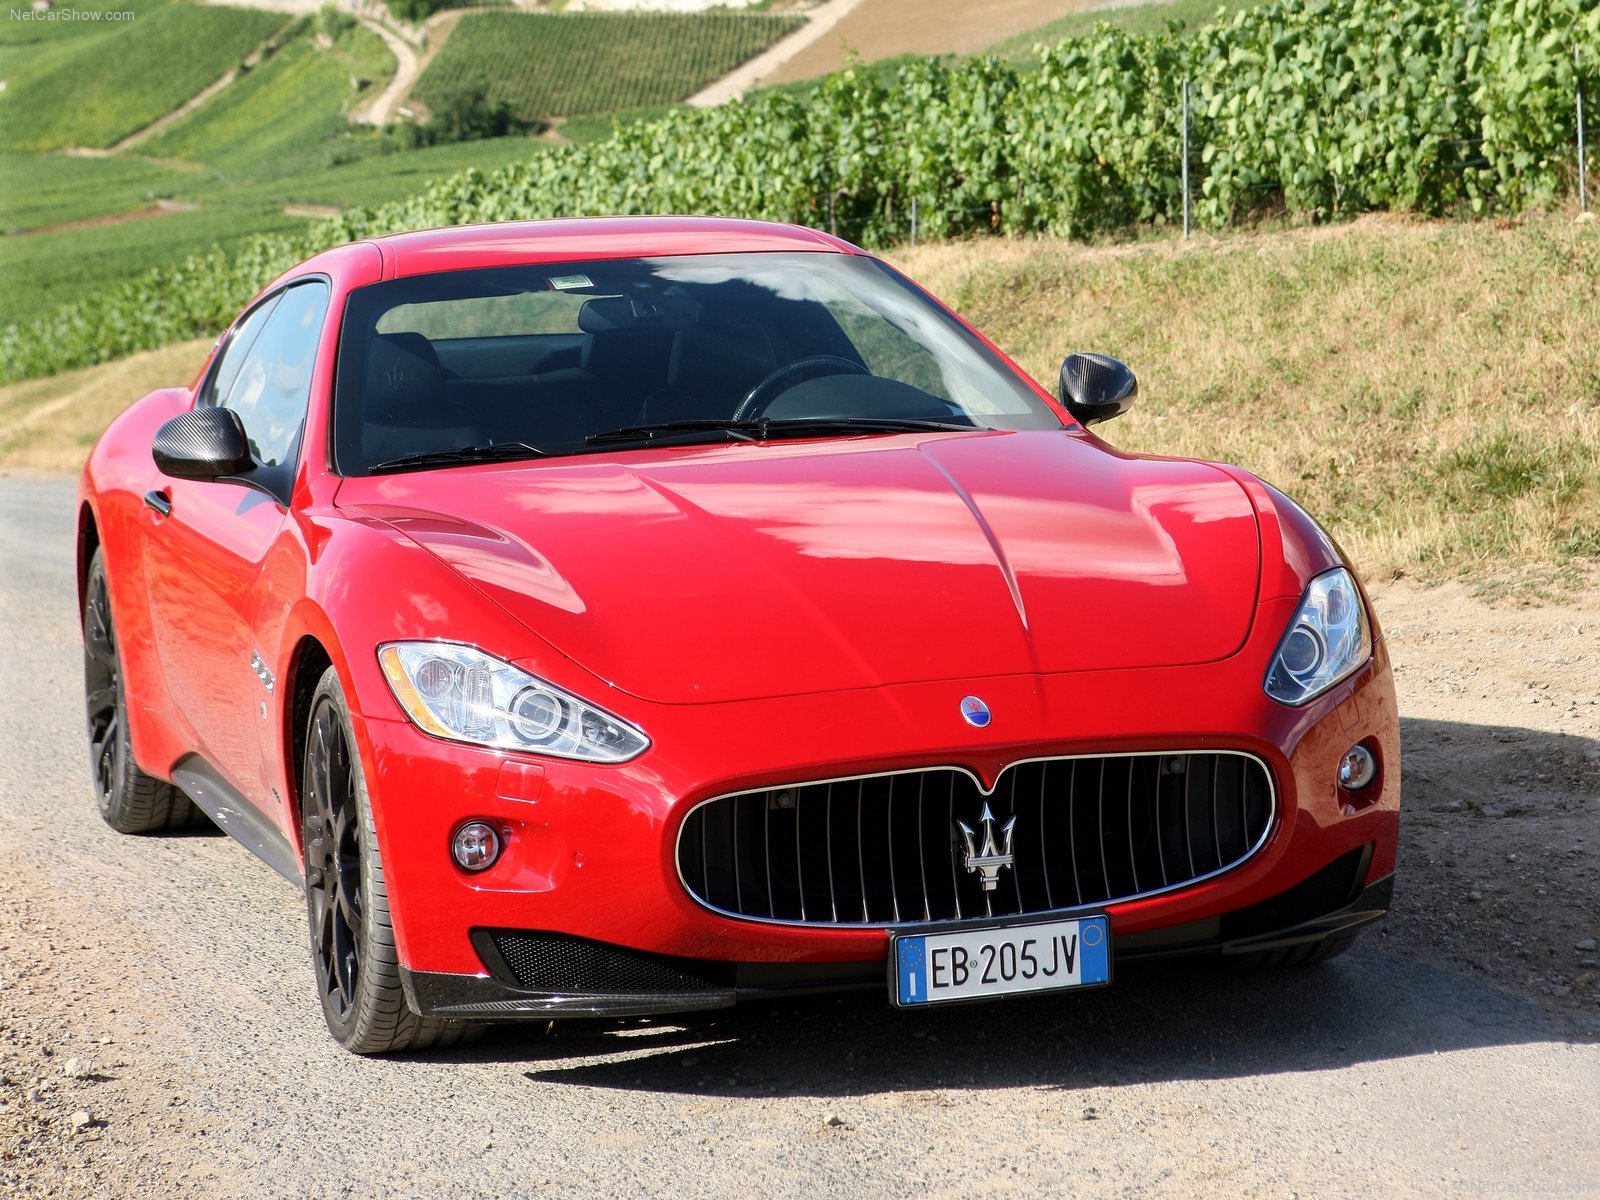 2010, Maserati, Granturismo, S, Automatic, V8, Coupe, Supercars Wallpaper